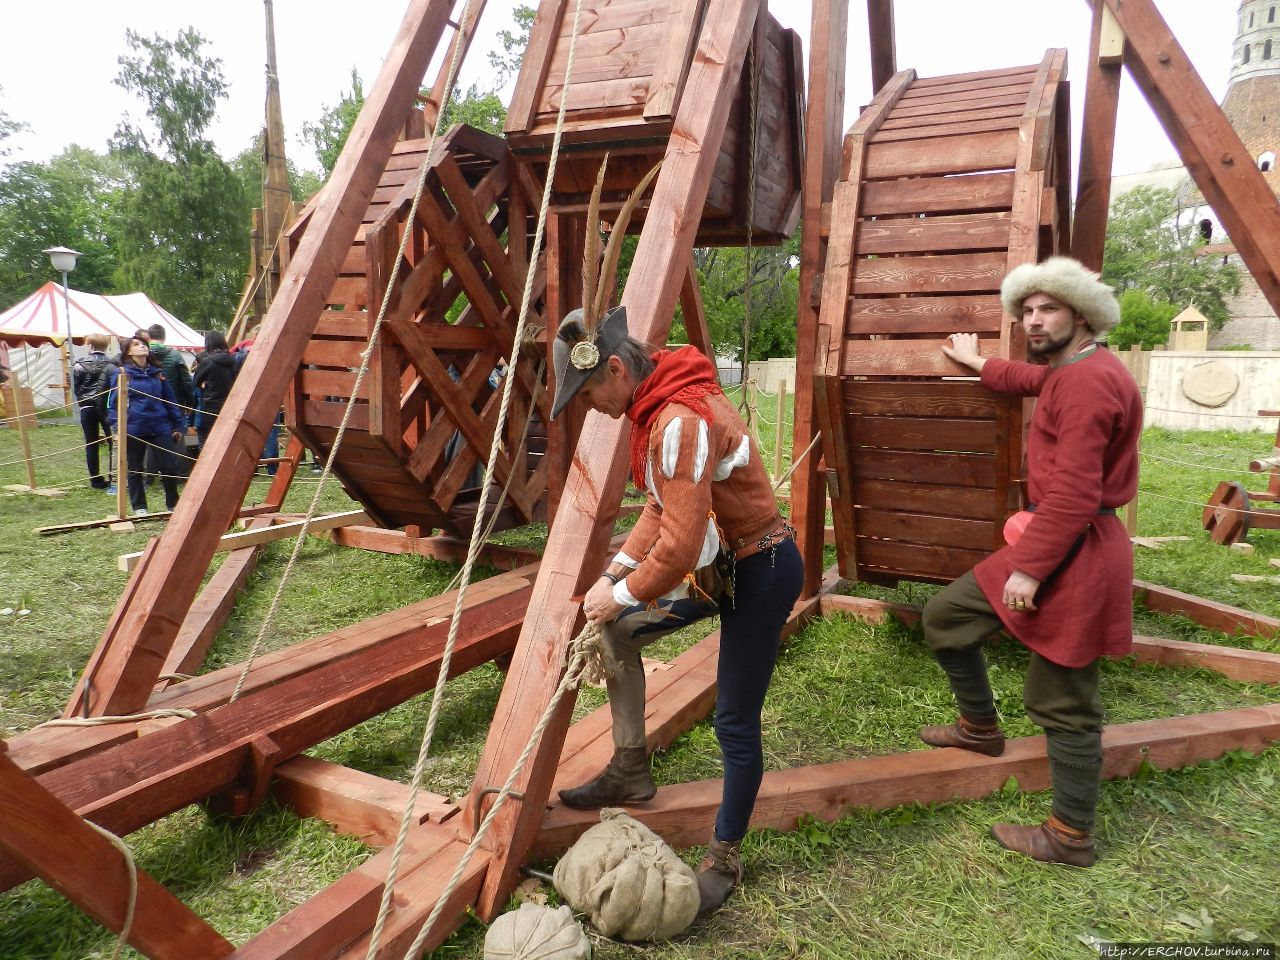 Времена и эпохи. Осадные орудия средневековья Москва, Россия